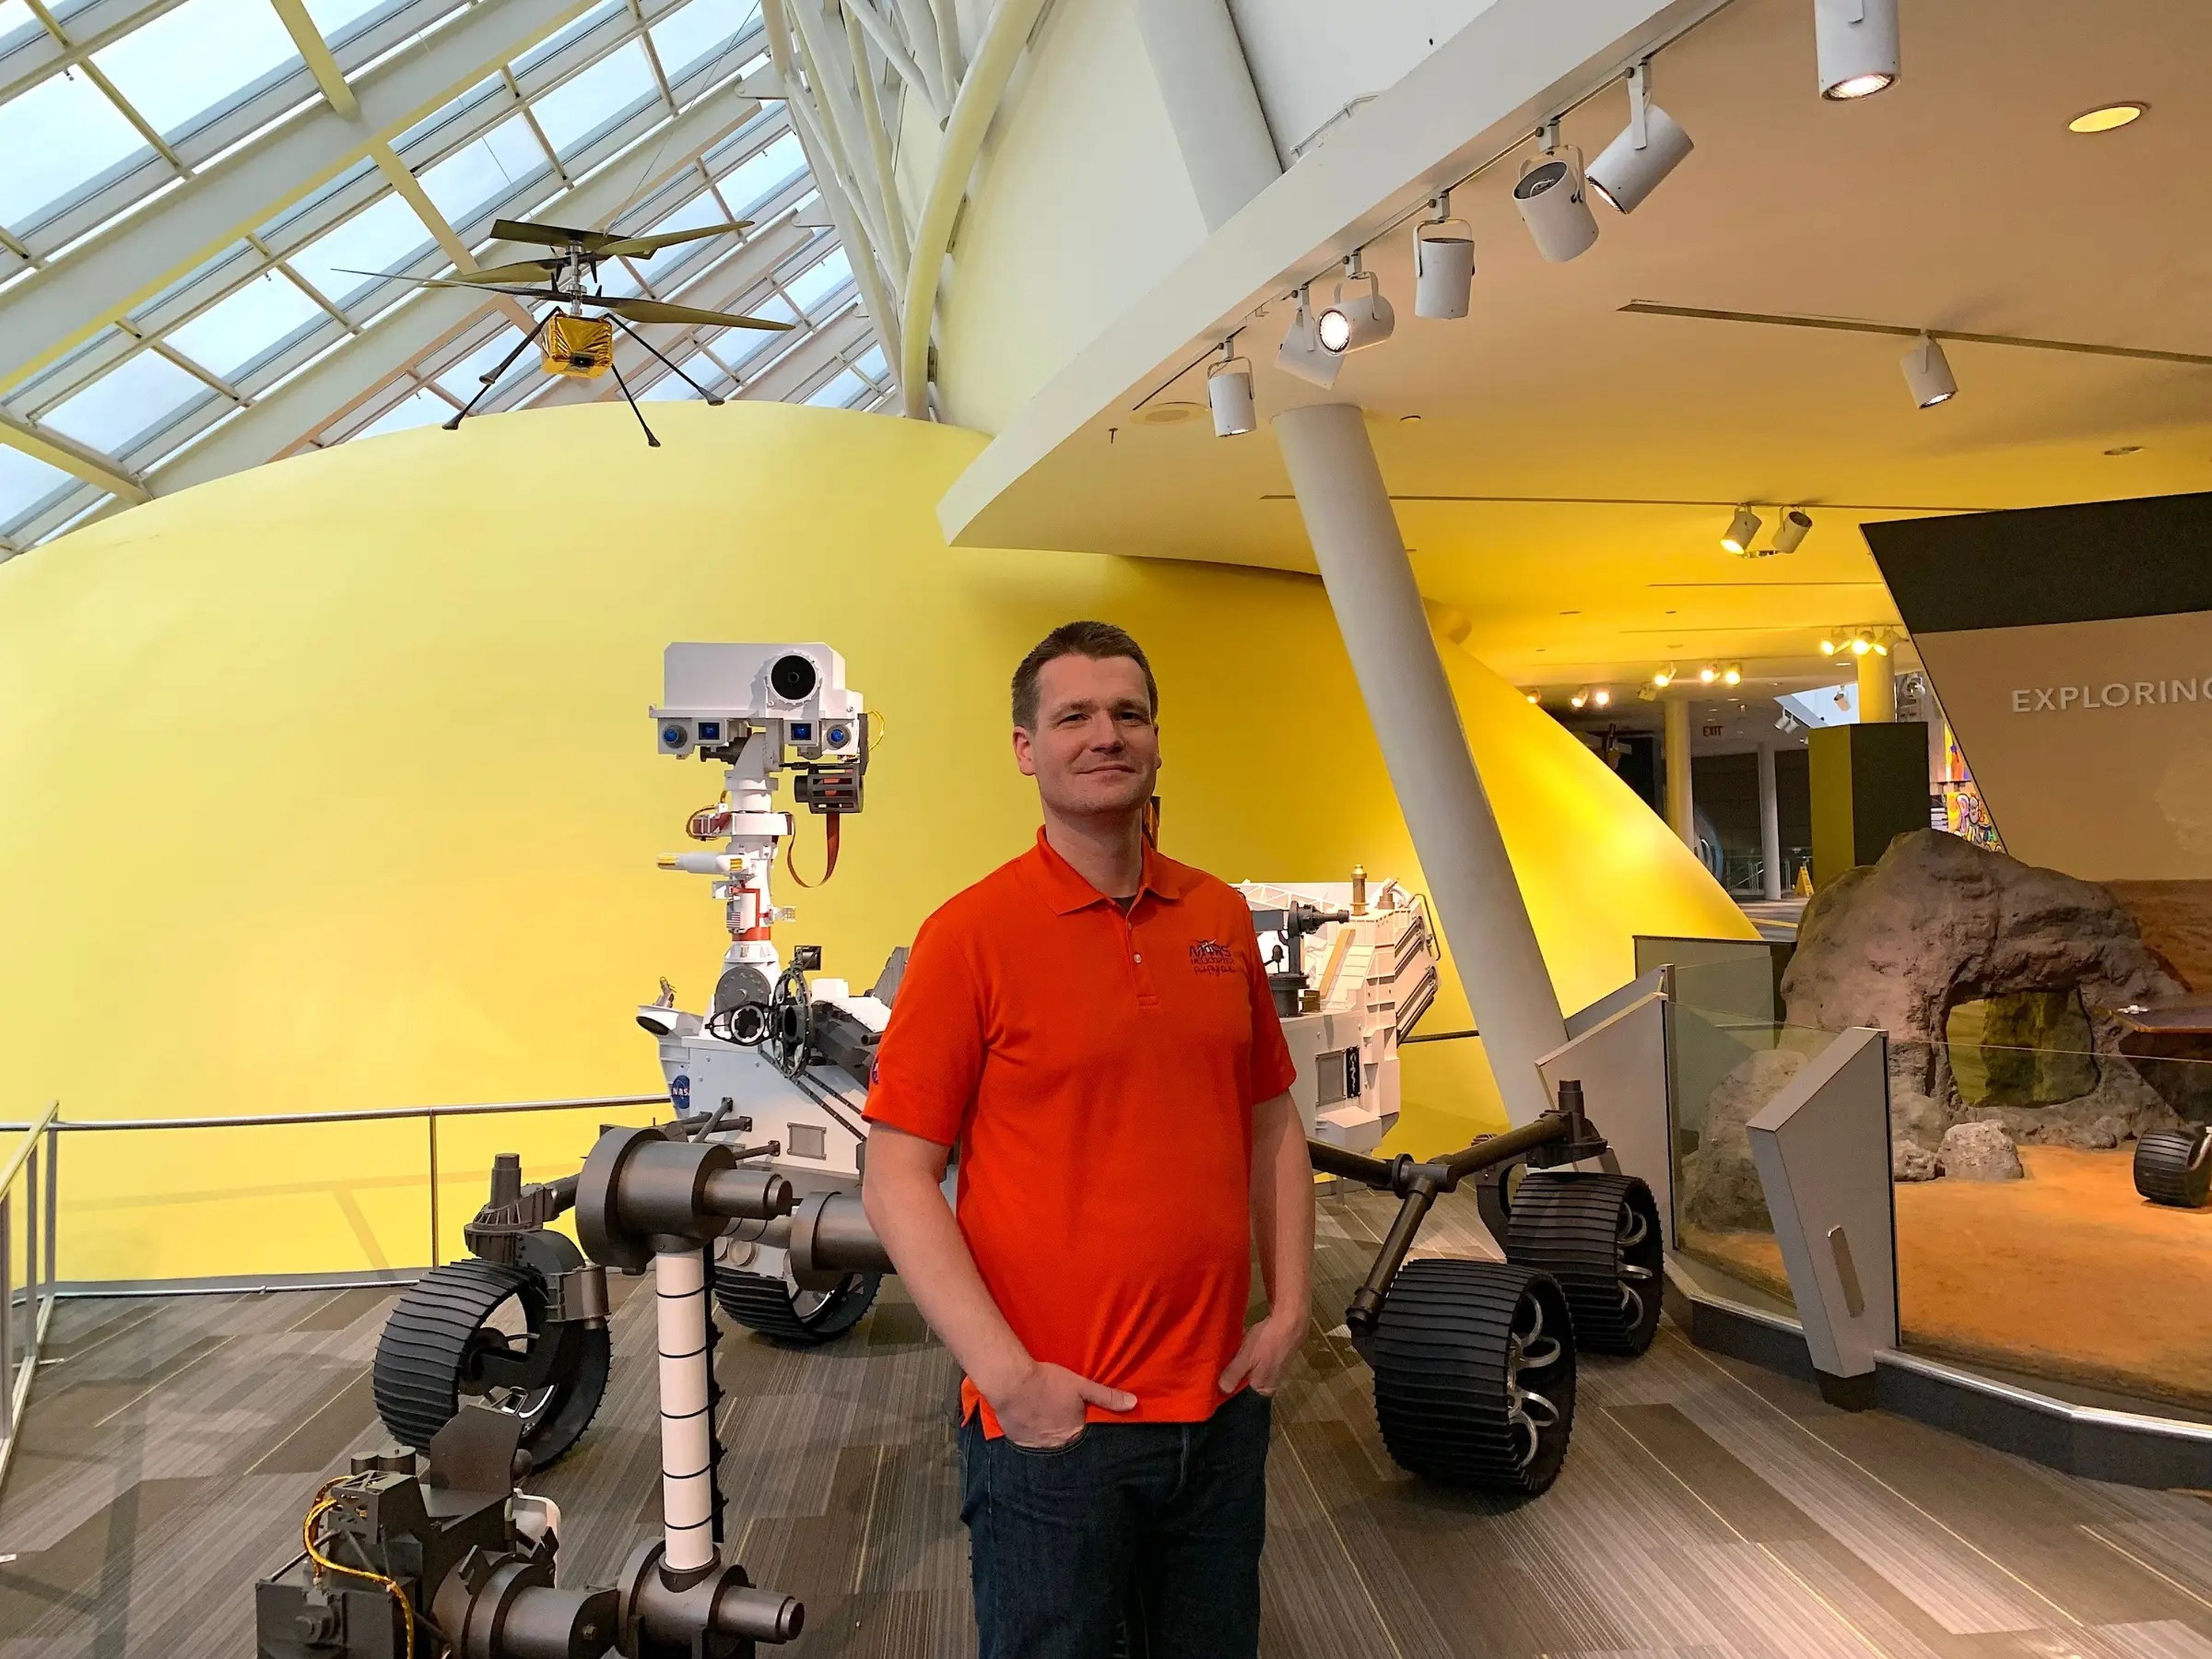 Håvard Grip delante de una maqueta a tamaño real del vehículo explorador Perseverance y del helicóptero Ingenuity (arriba a la izquierda) en el Planetario Adler de Chicago.